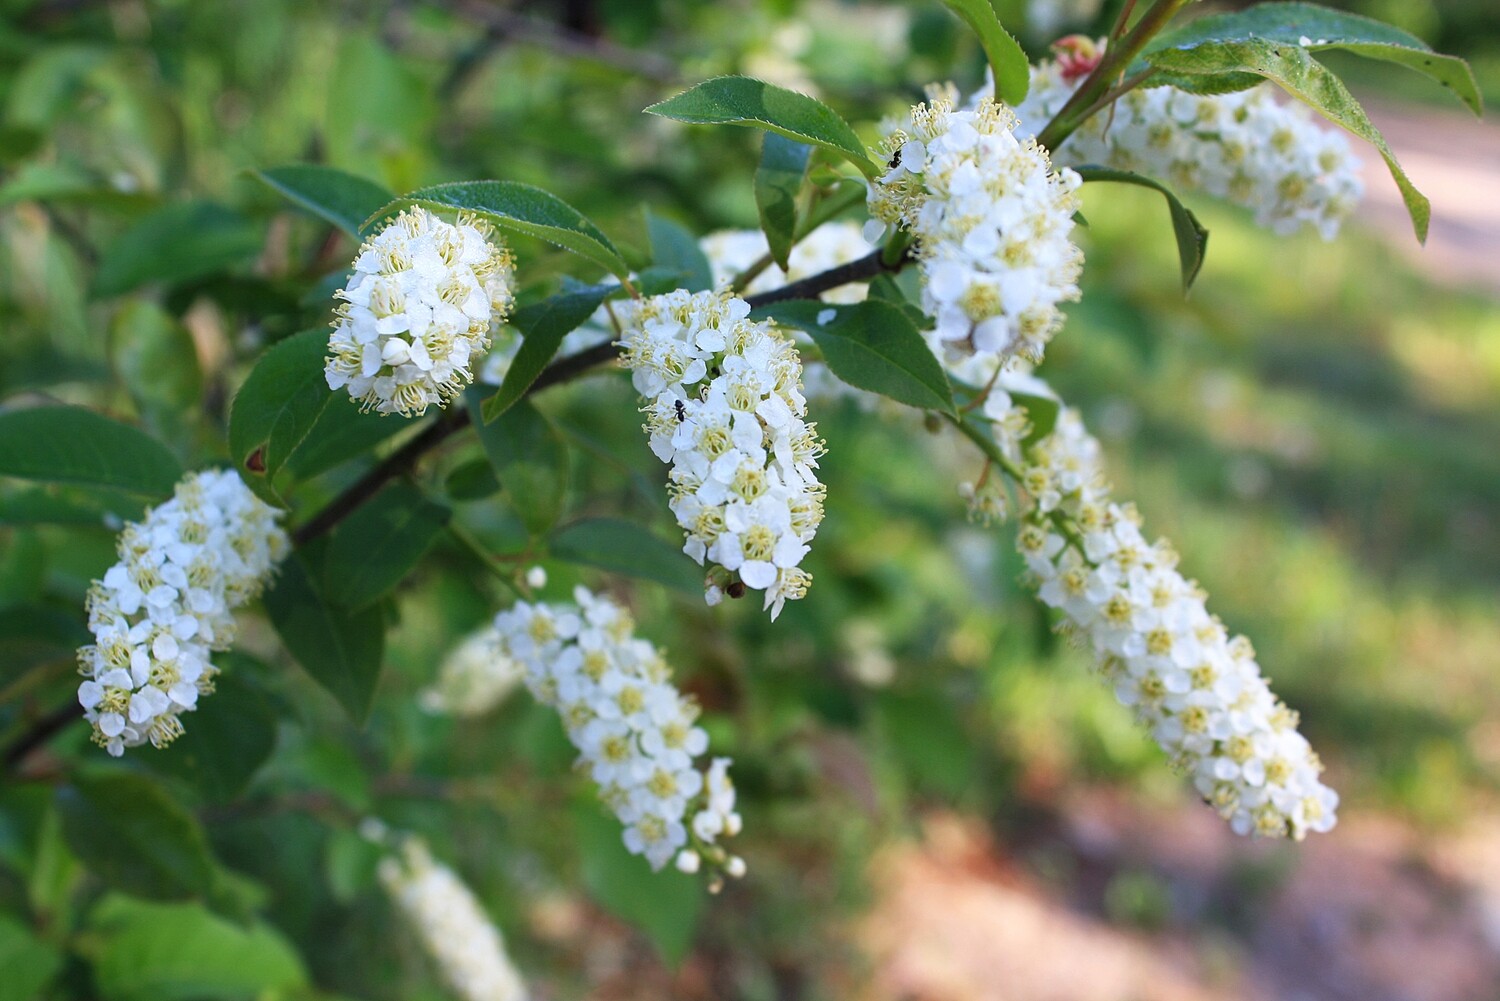 Prunus virginiana - Chokecherry